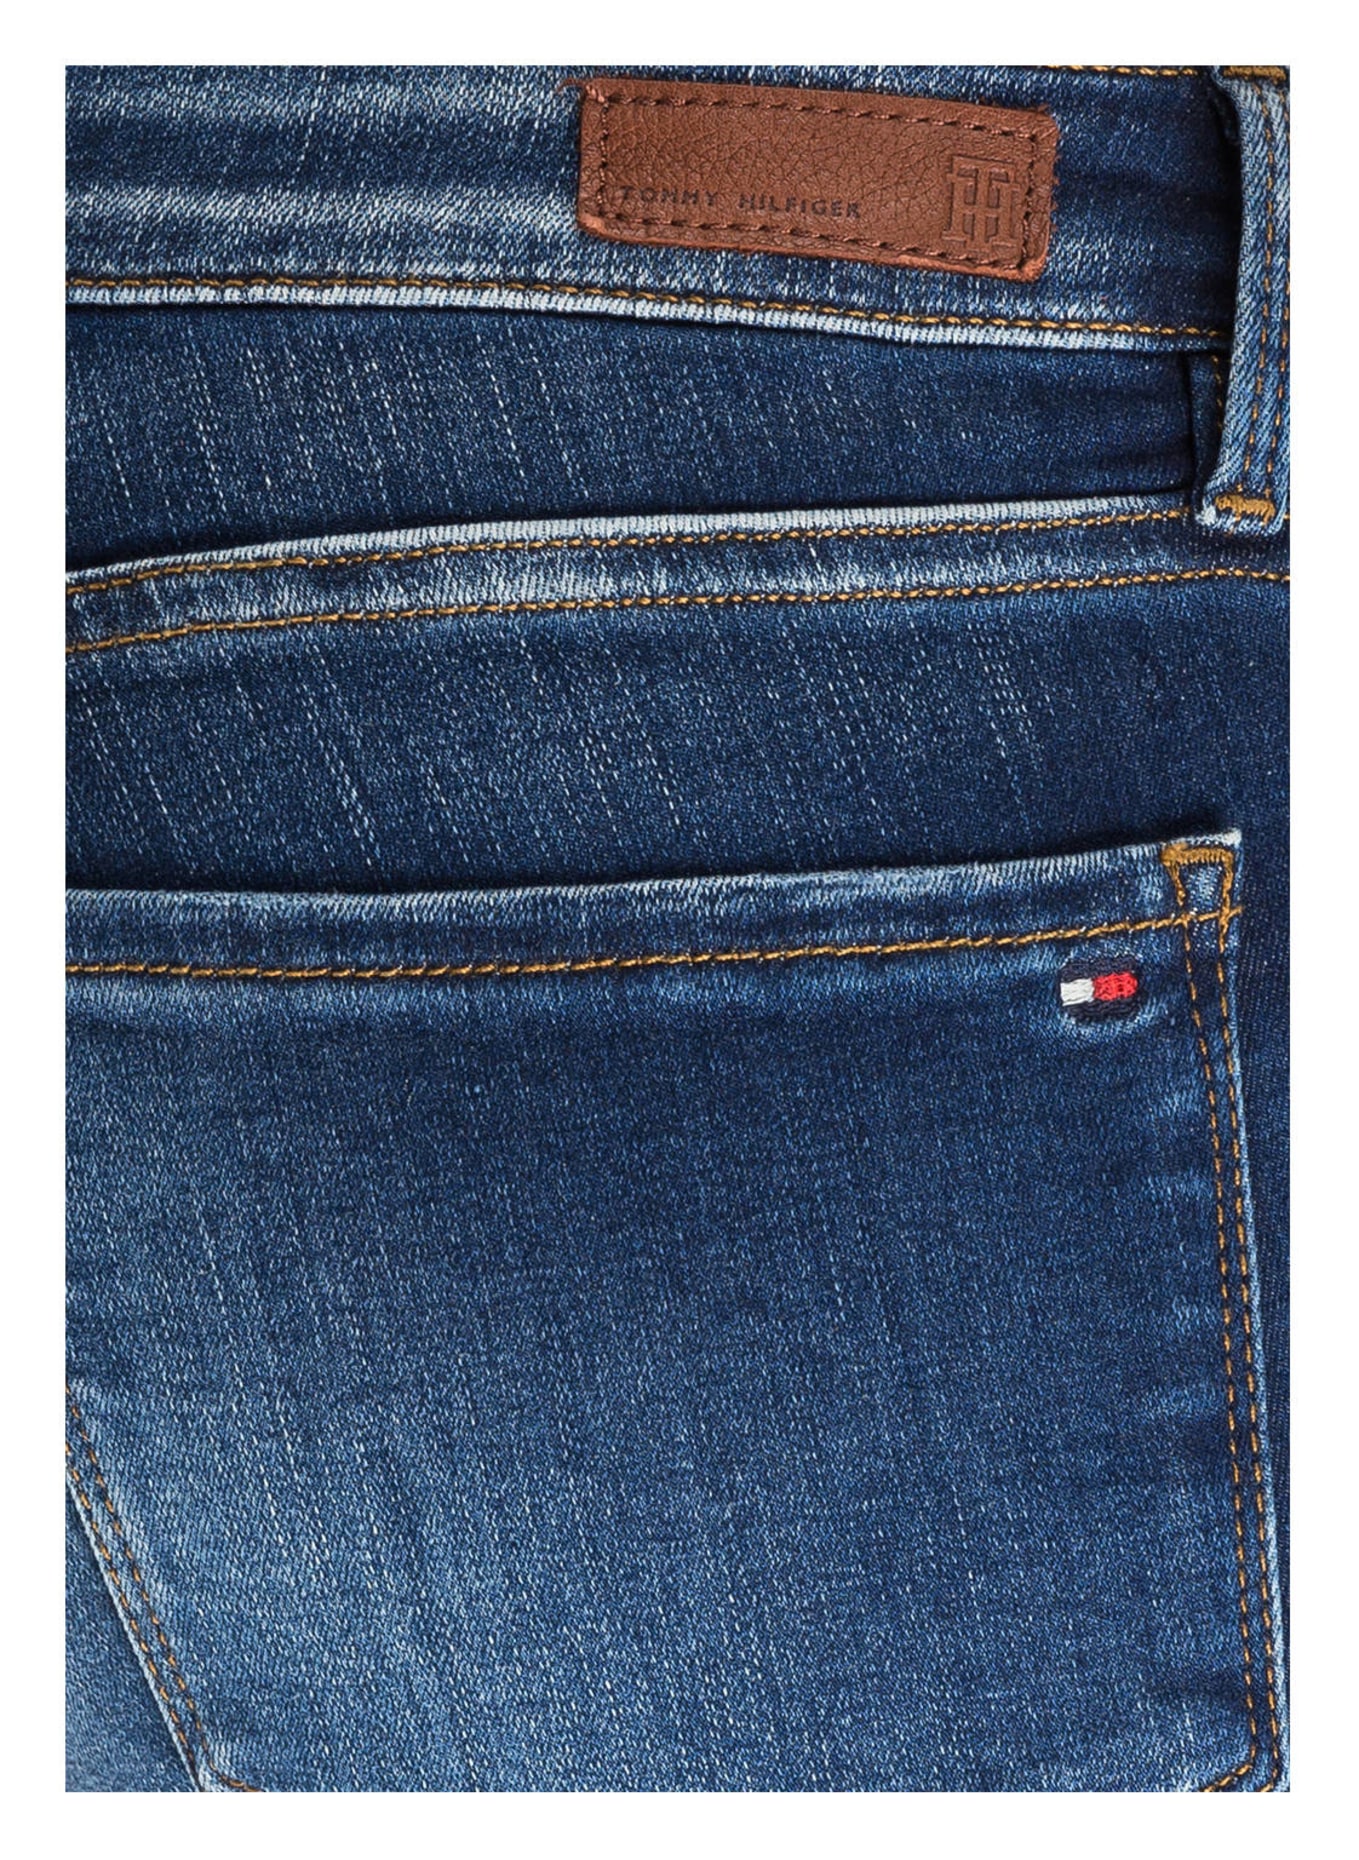 TOMMY HILFIGER Jeans DOREEN, Color: 410 DOREEN (Image 5)